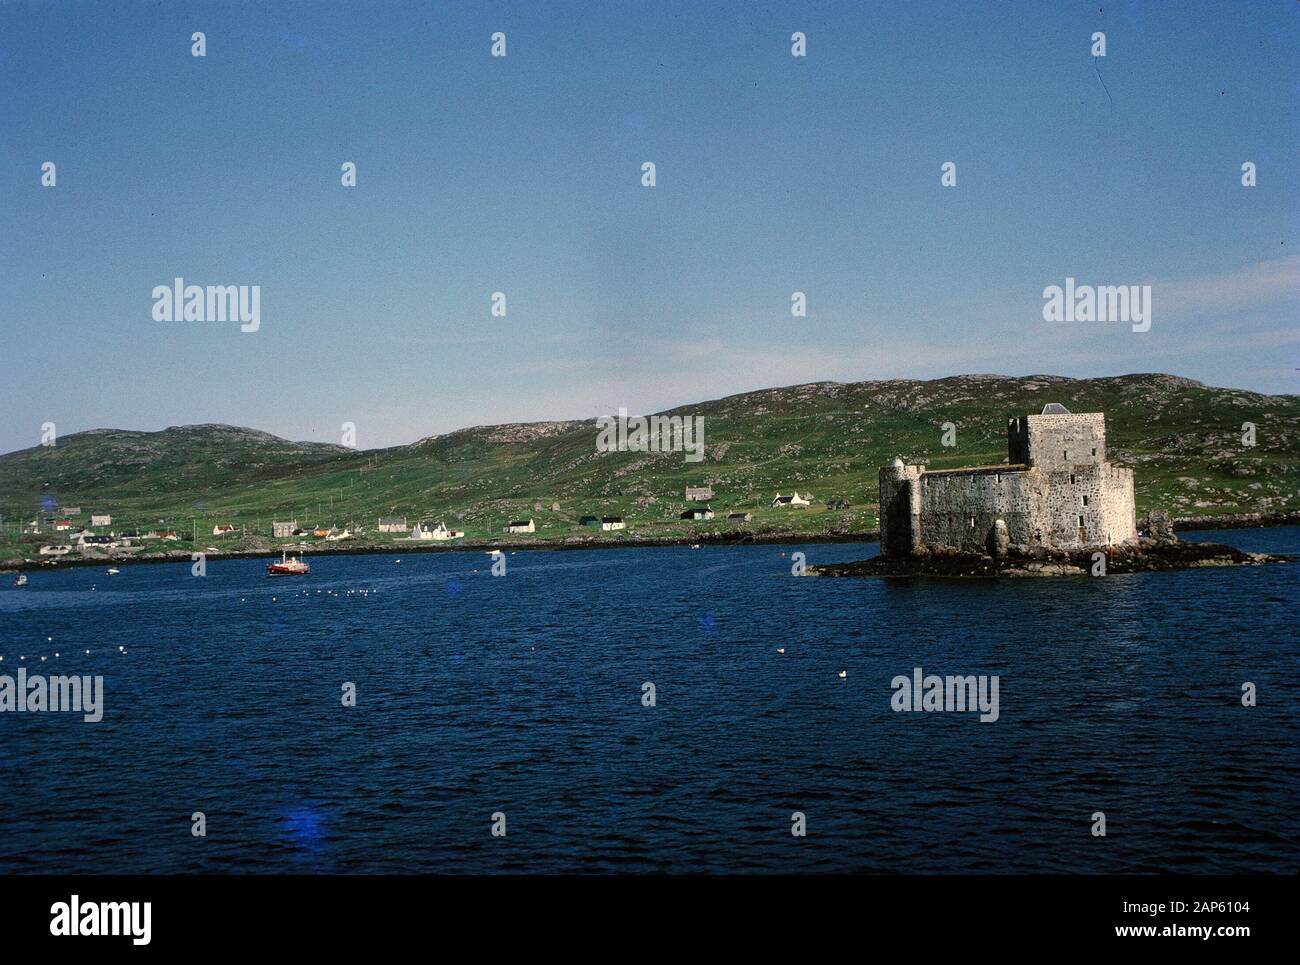 Nakuläres Foto, aufgenommen auf einer analogen 35-mm-Filmtransparenz, vermutet, dass es tagsüber ein graues Betongebäude in der Nähe des Wasserkörpers darstellt, 1965. Wichtige Themen/Objekte sind Wasser, Außenbereich, Himmel, See, Insel und Meer. () Stockfoto